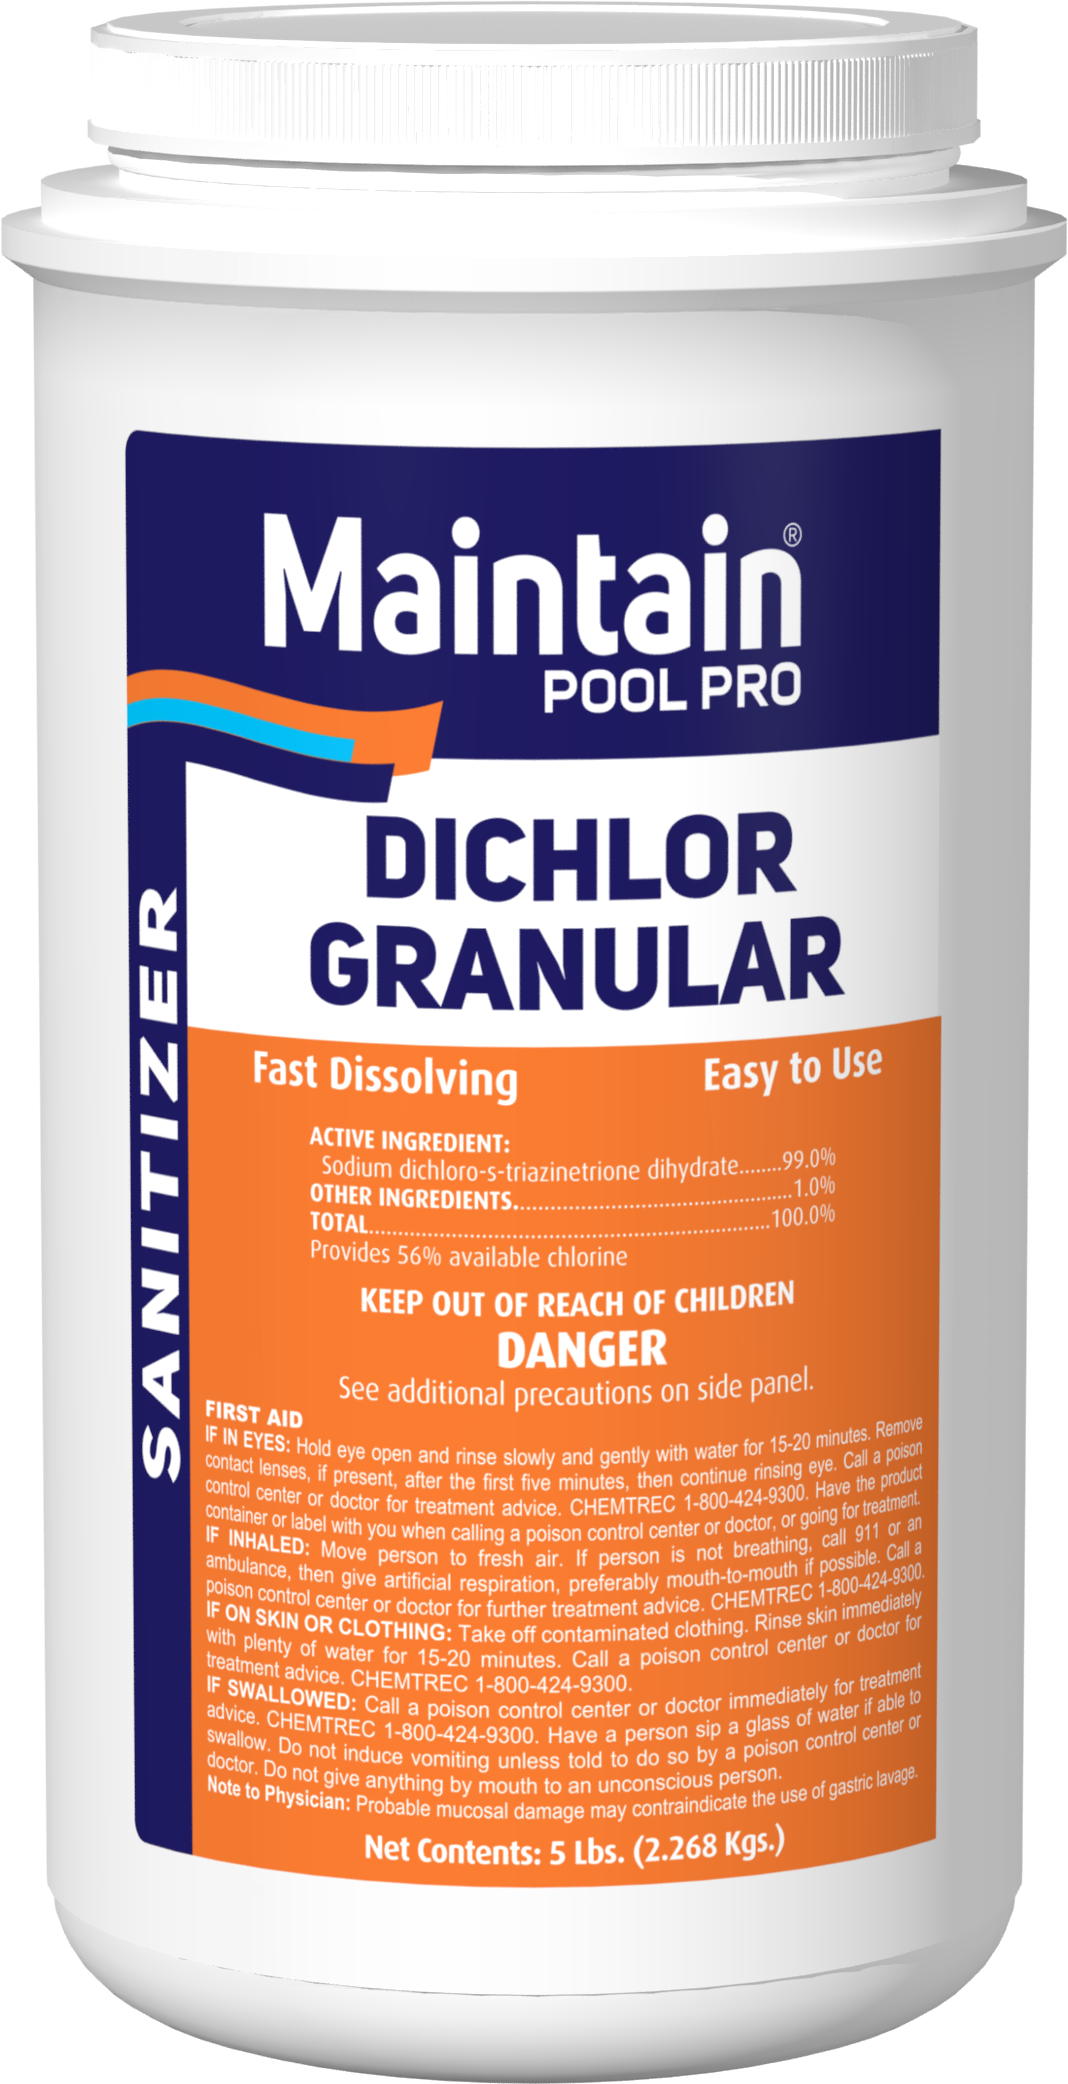 Di-Chlor Granular Chlorine